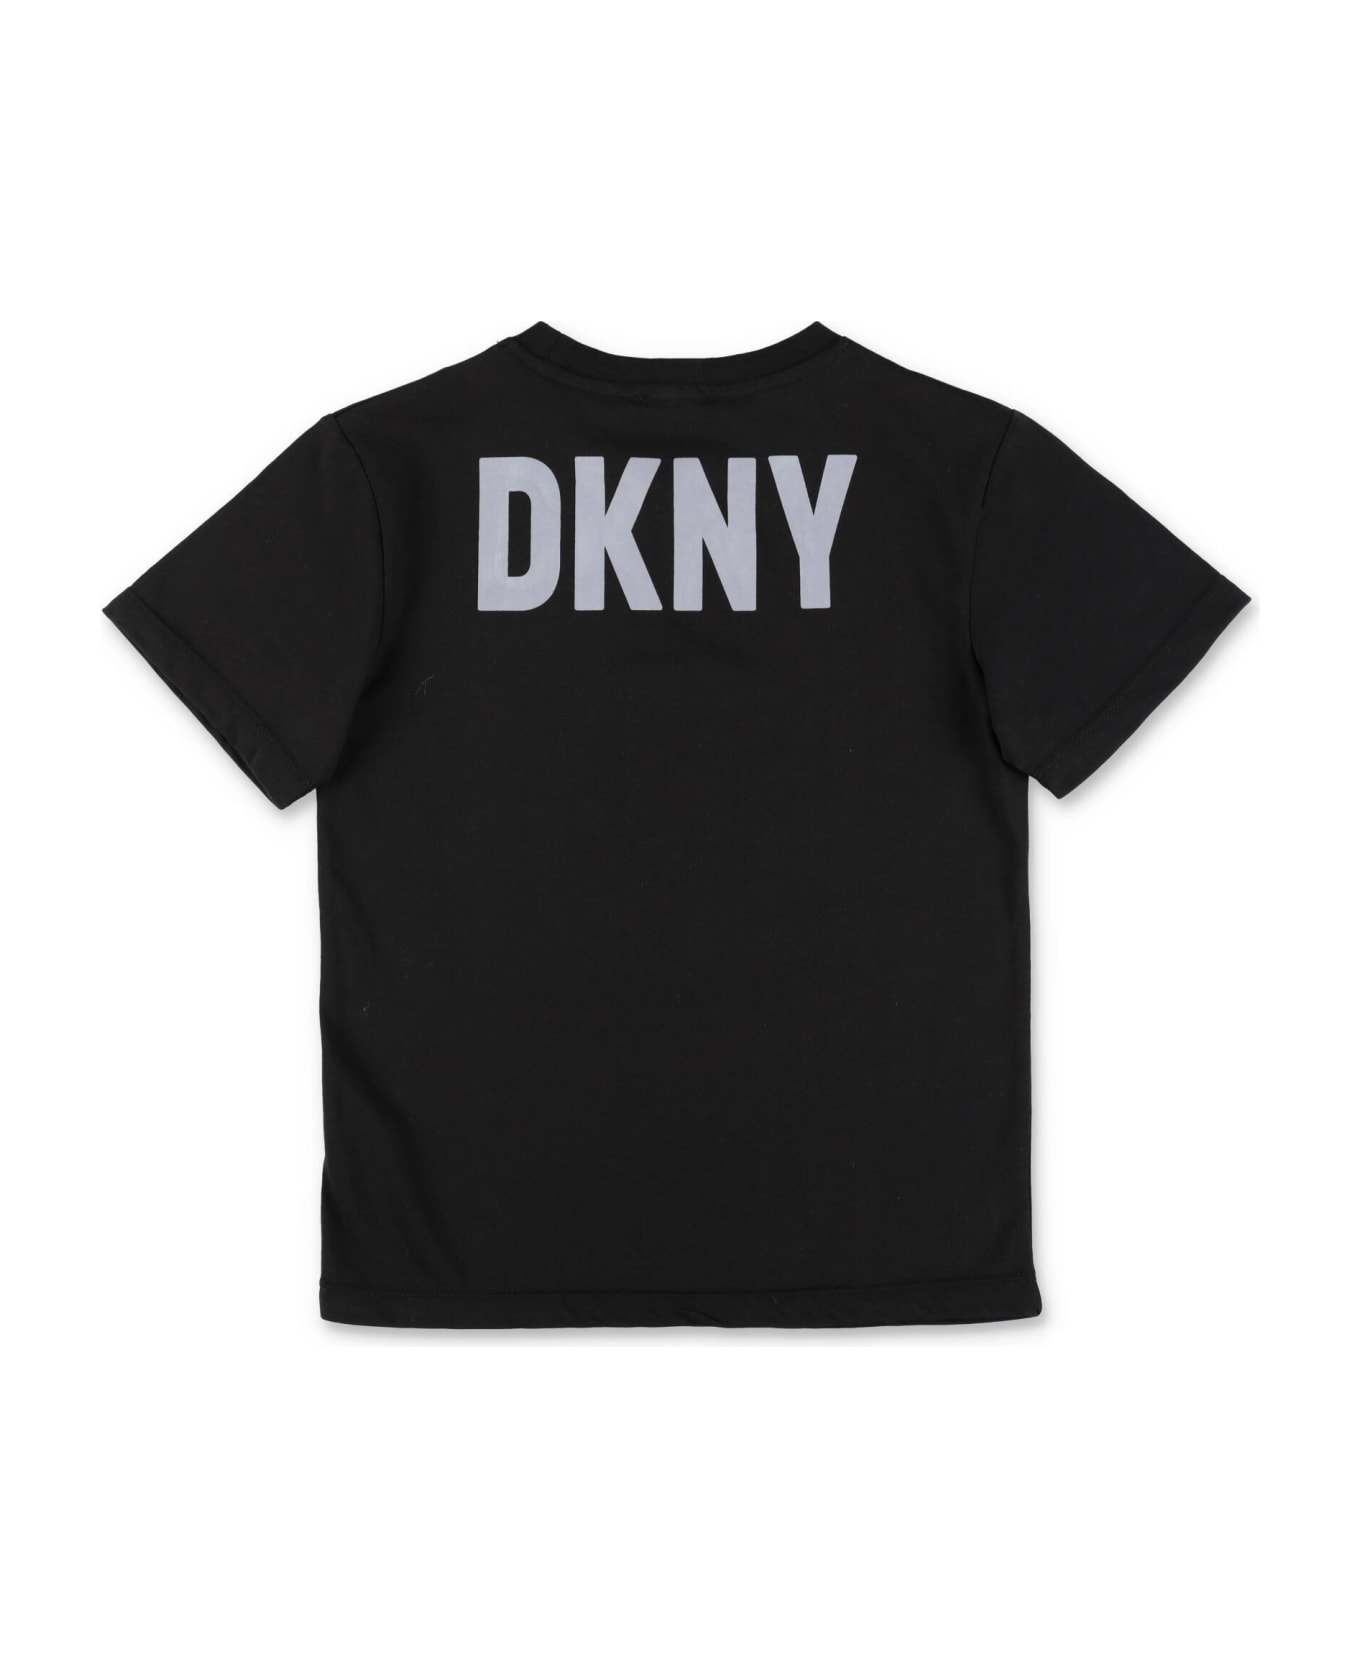 DKNY X Batman T-shirt Nera In Jersey Di Cotone Bambino - Nero